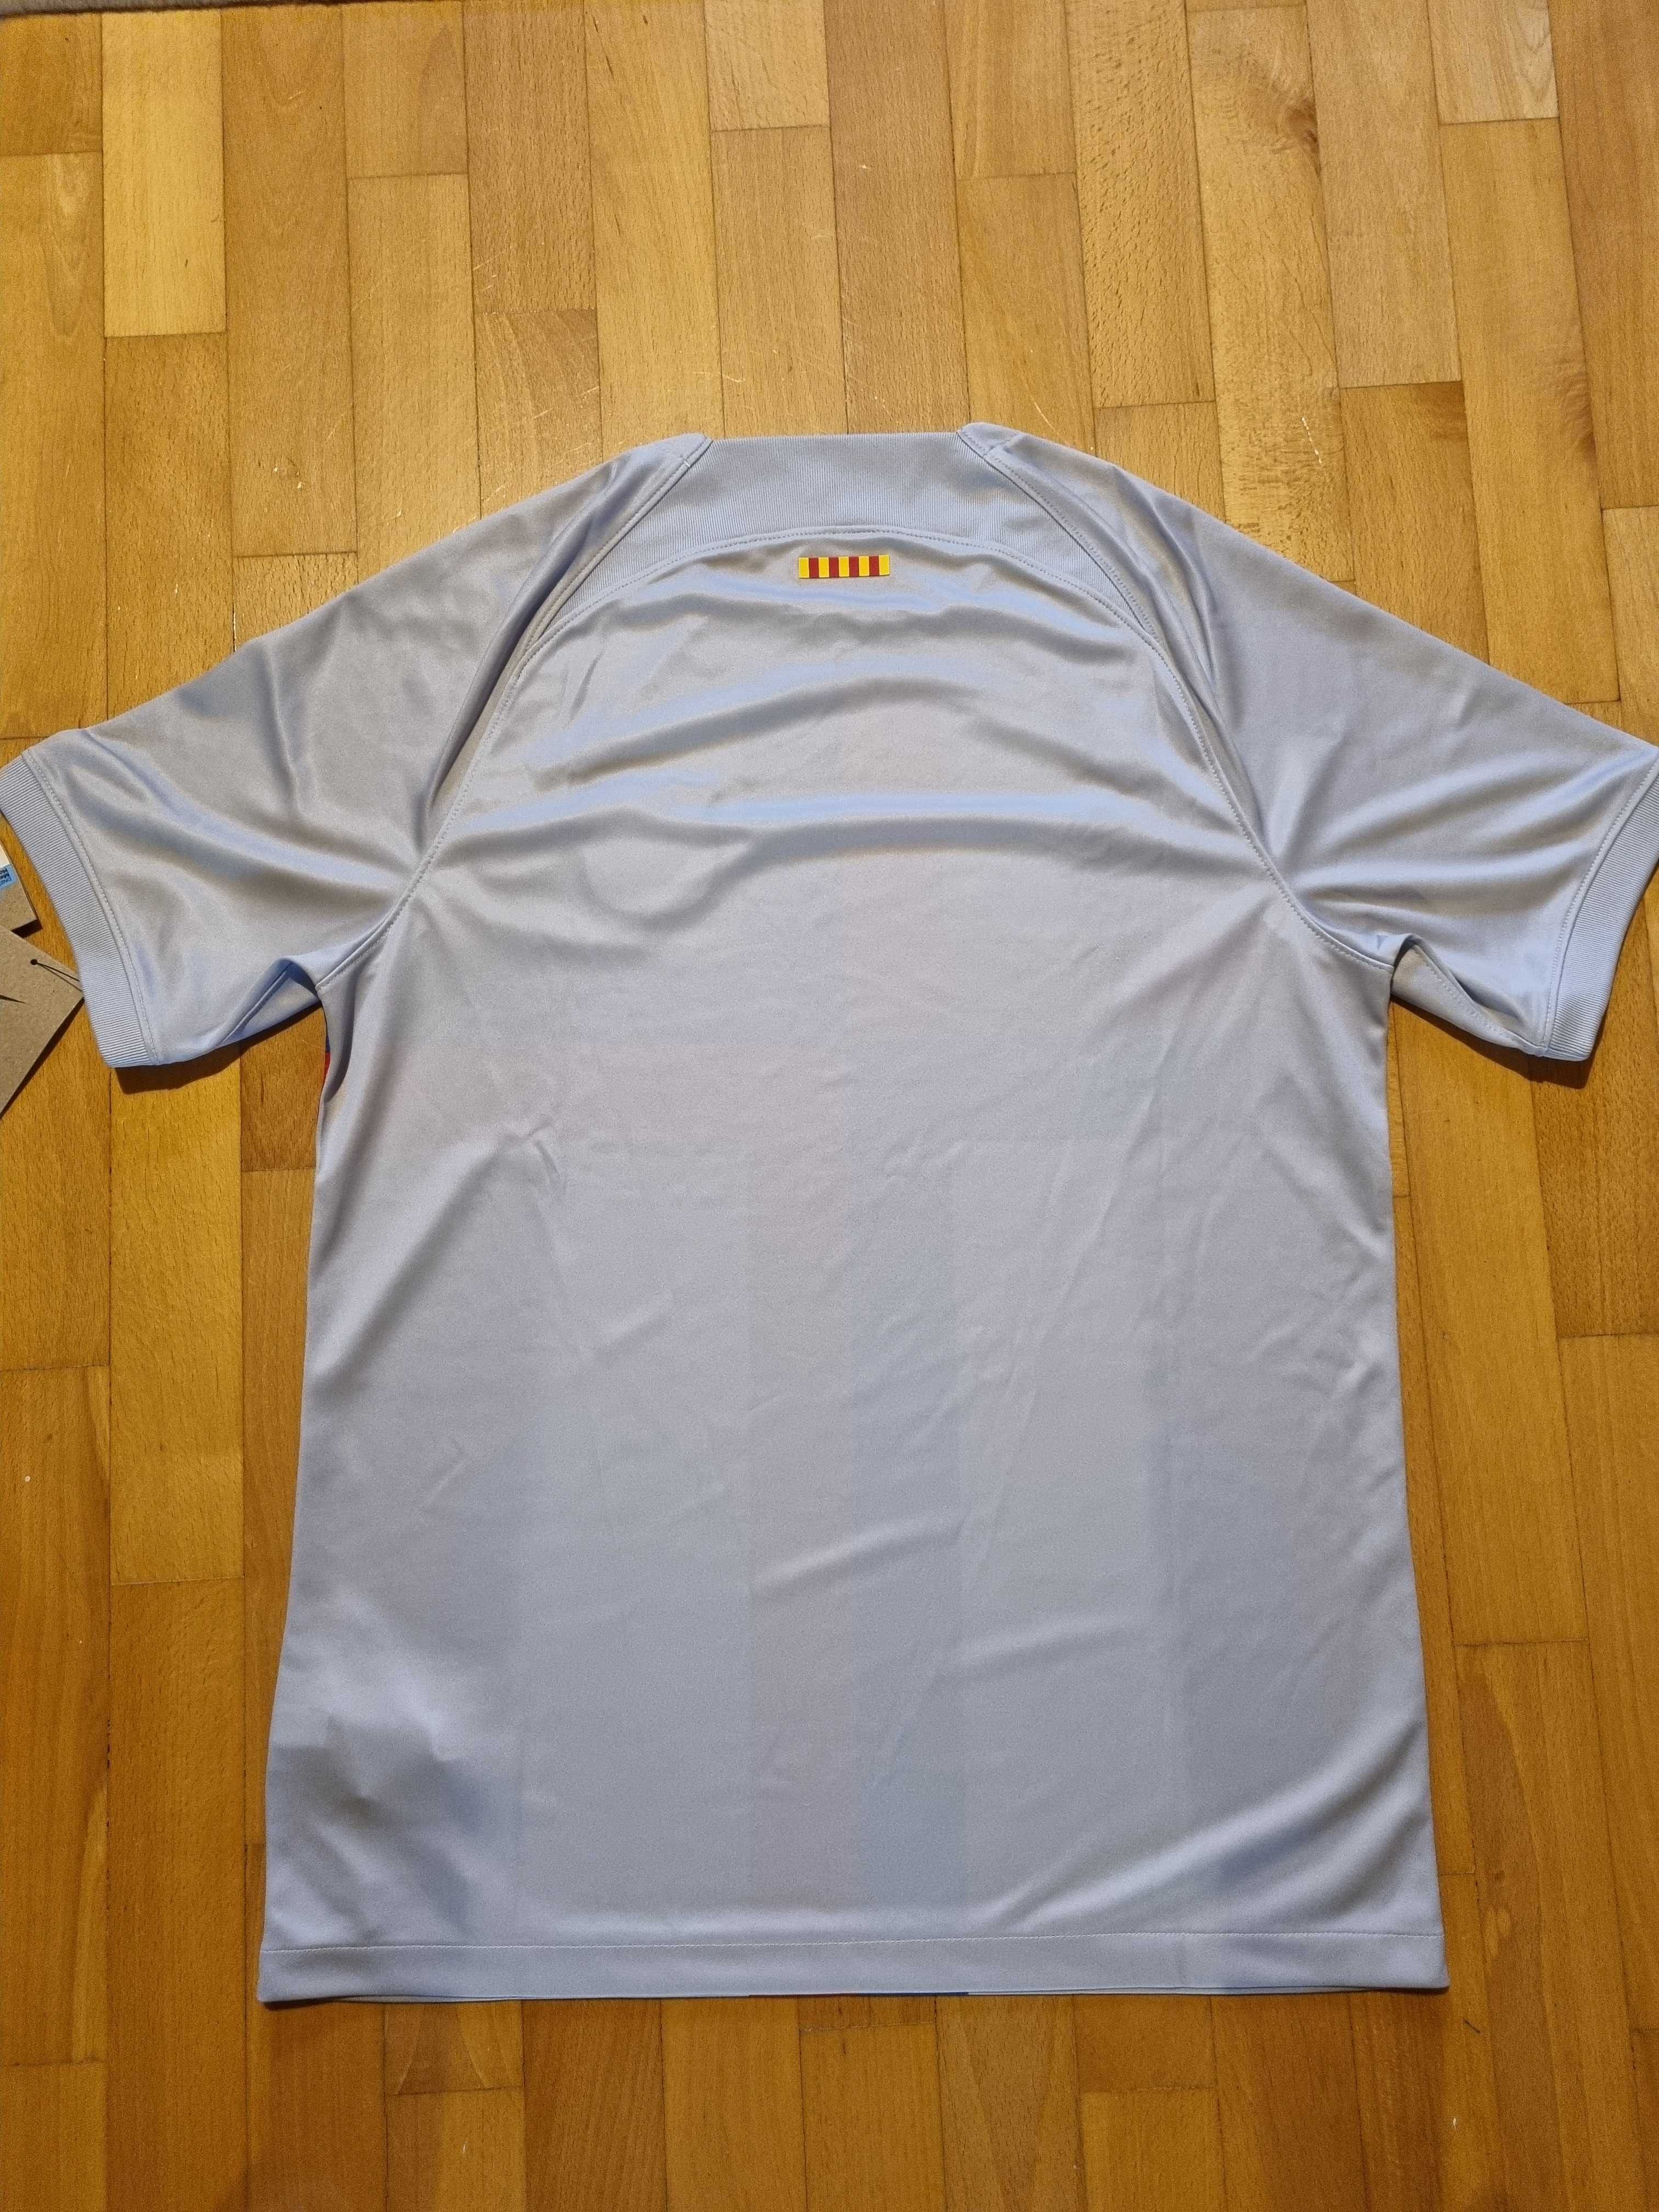 Koszulka męska FB Barcelona - Nike, nowa rozm M na prezent